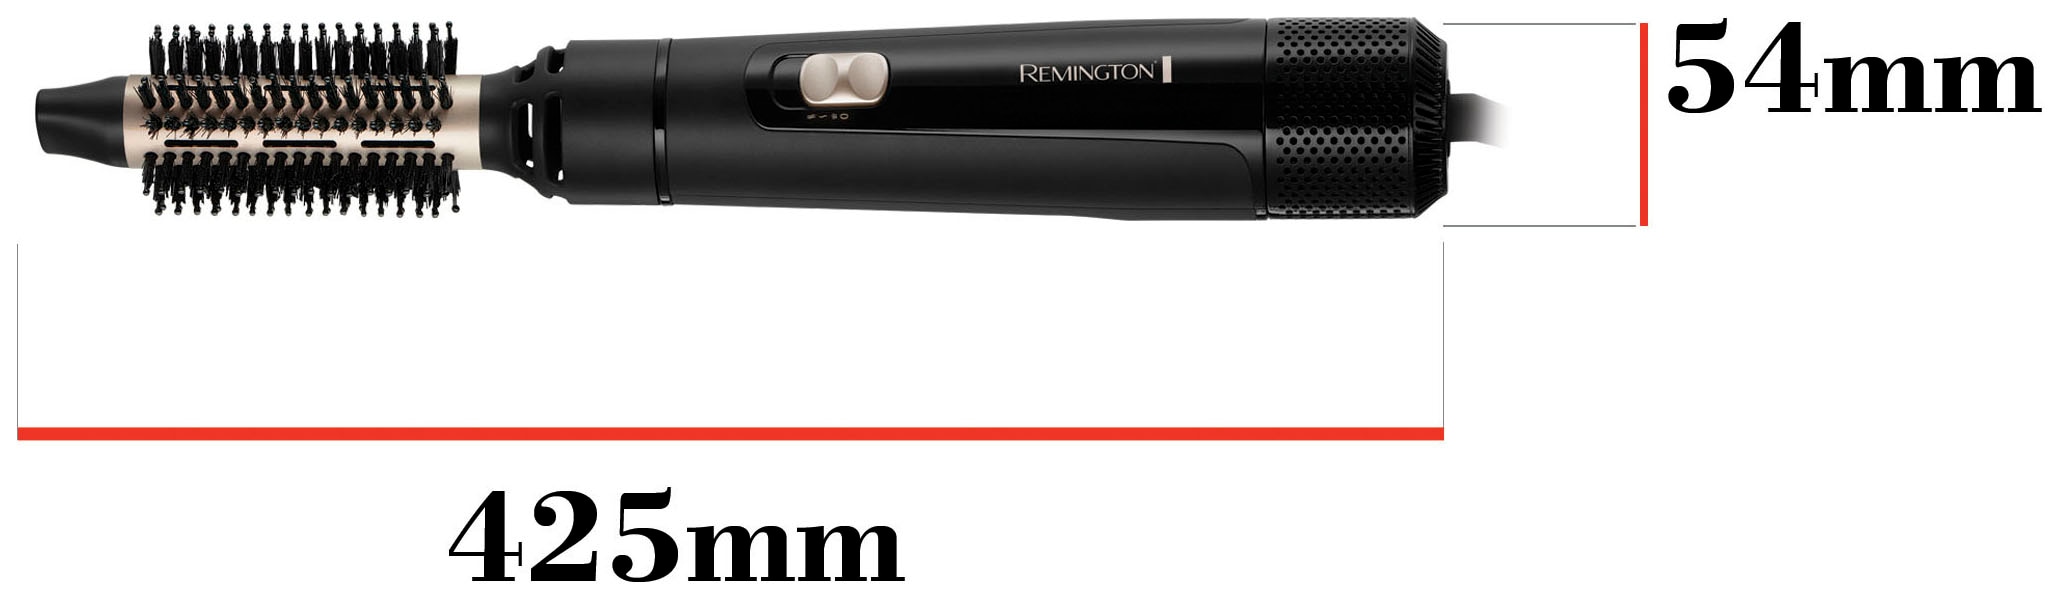 Remington Warmluftbürste »Blow Dry & Style AS7300«, 3 Aufsätze}, 800 Watt  (Airstyler / Rund-& Lockenbürste) für kurze-mittellange Haare online kaufen